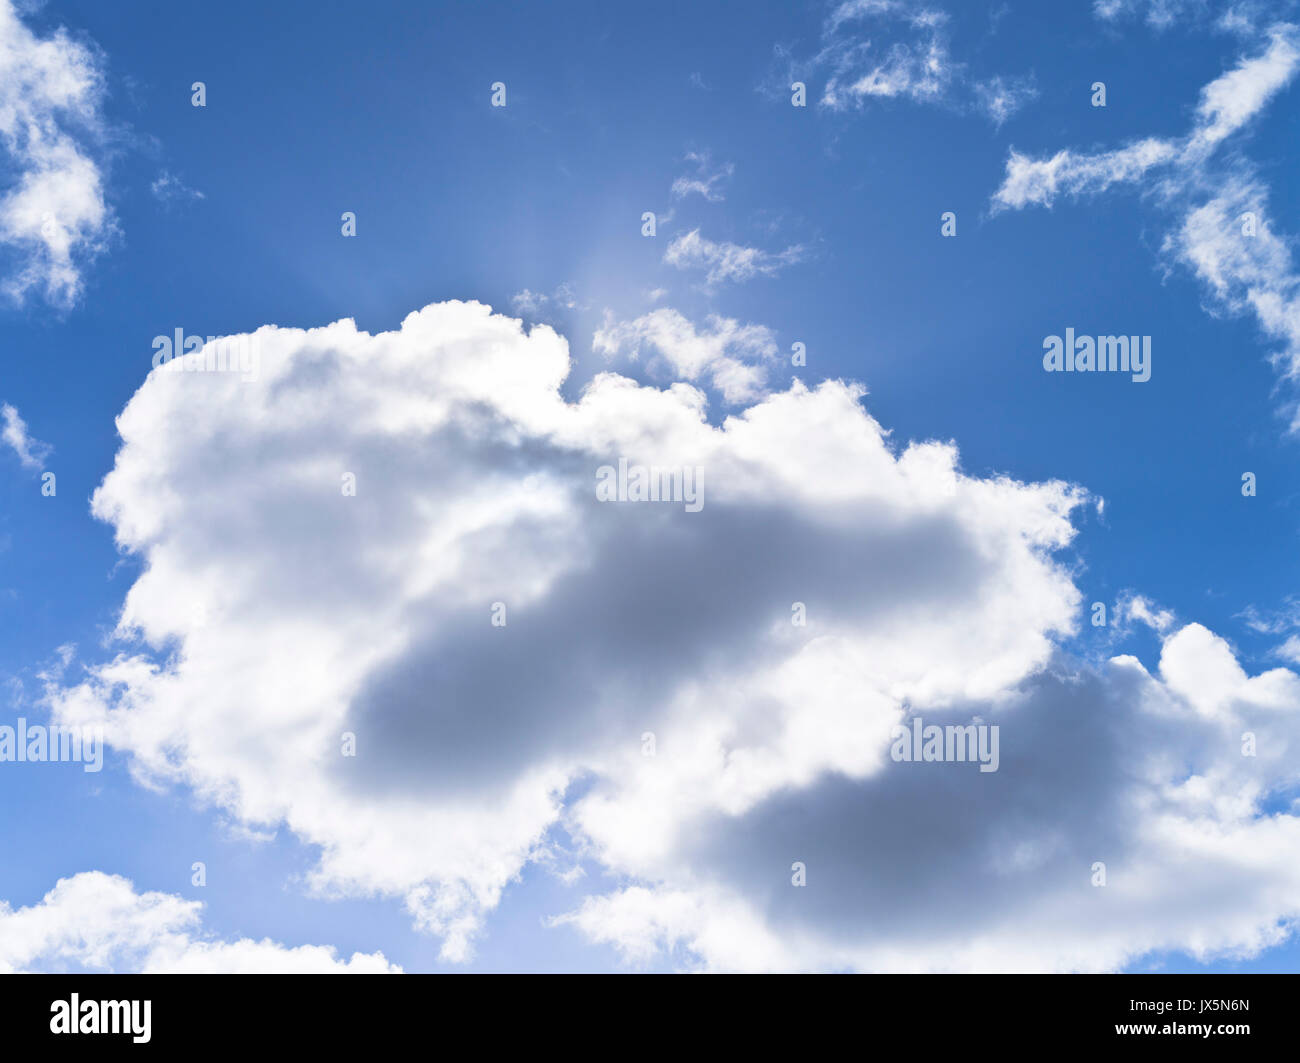 dh Blanco nubes CIELO Reino Unido Backlit nube azul cielo blanco gris nubes puffy suave nubosidad día Foto de stock